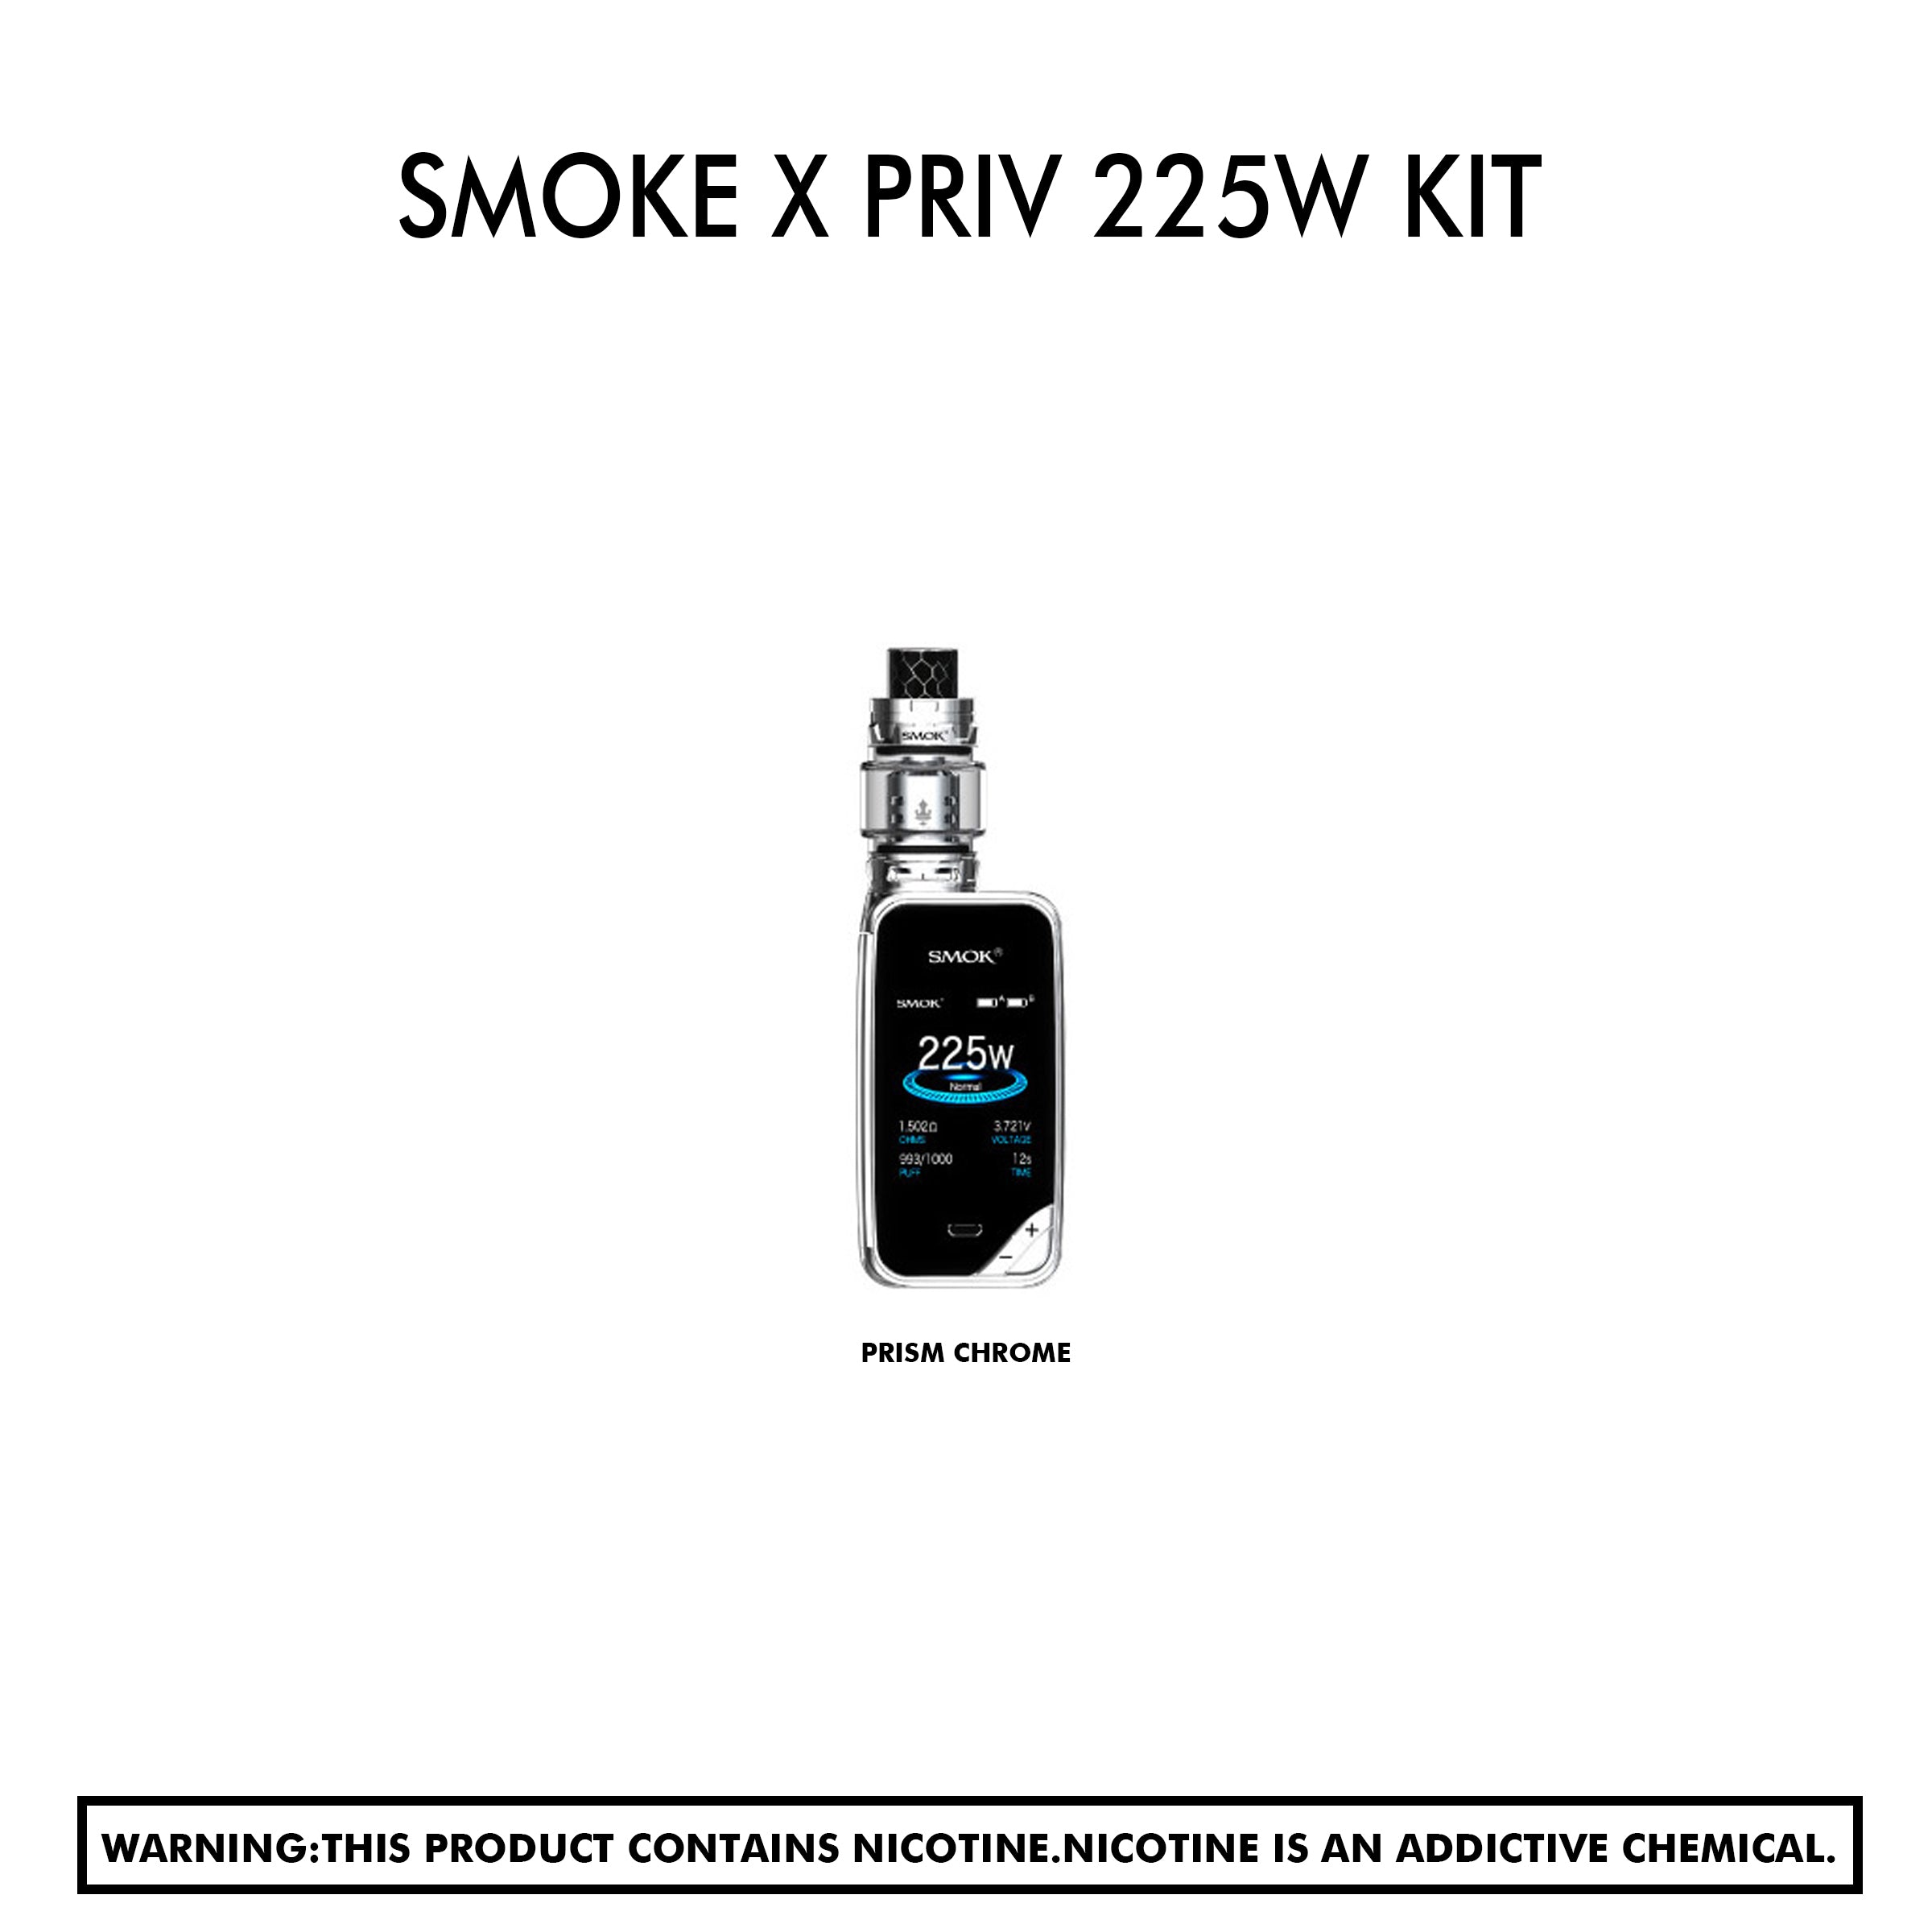 Smoke X Priv 225w Kit